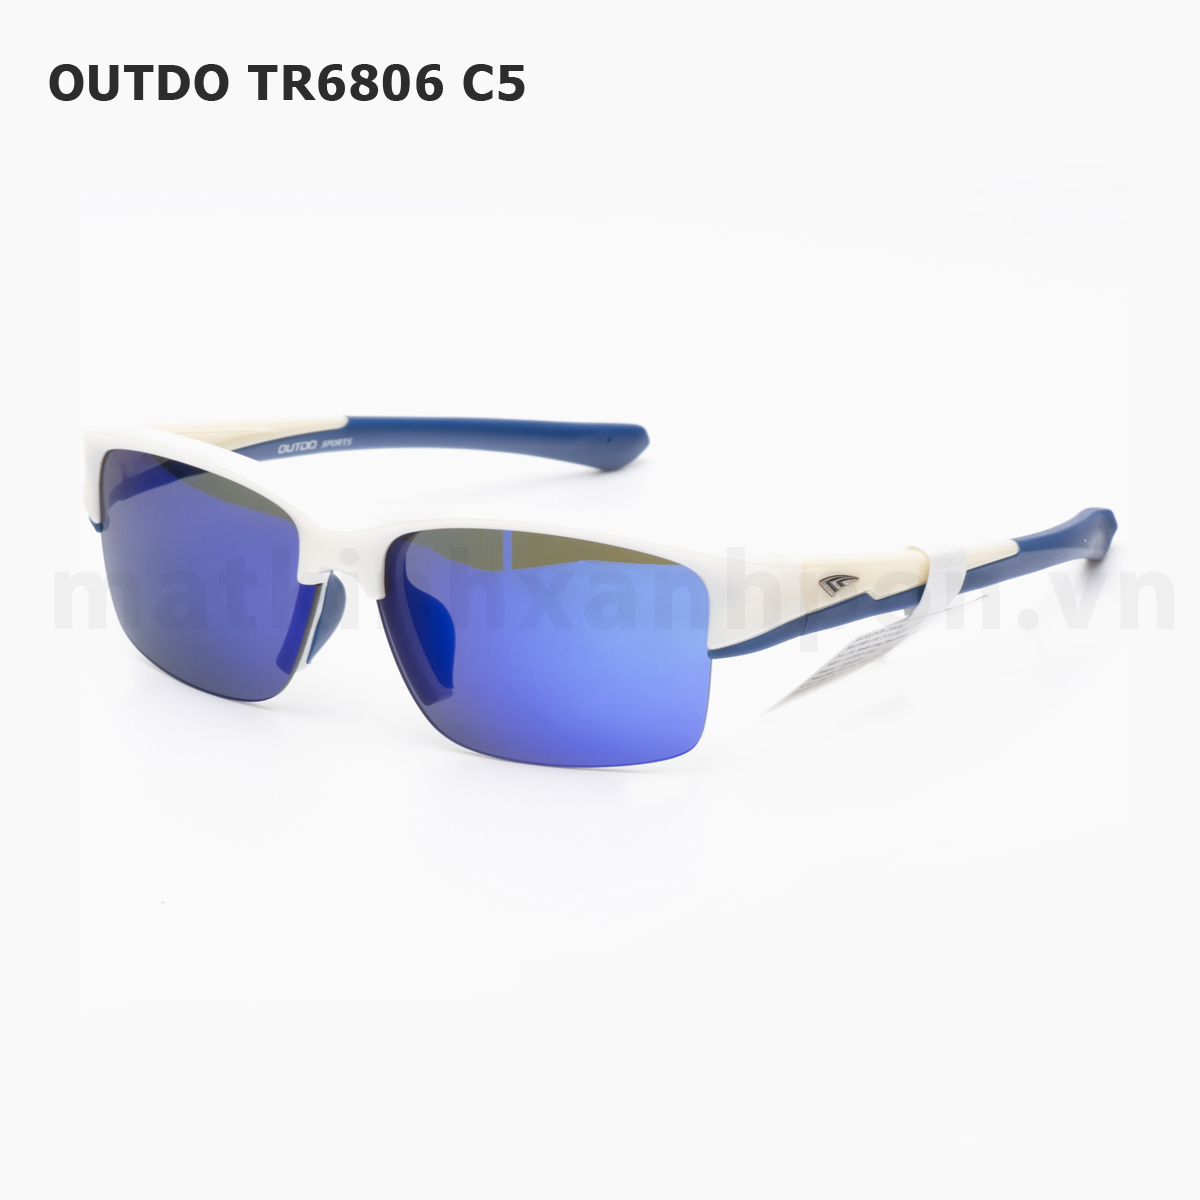 Outdo TR6806 C5